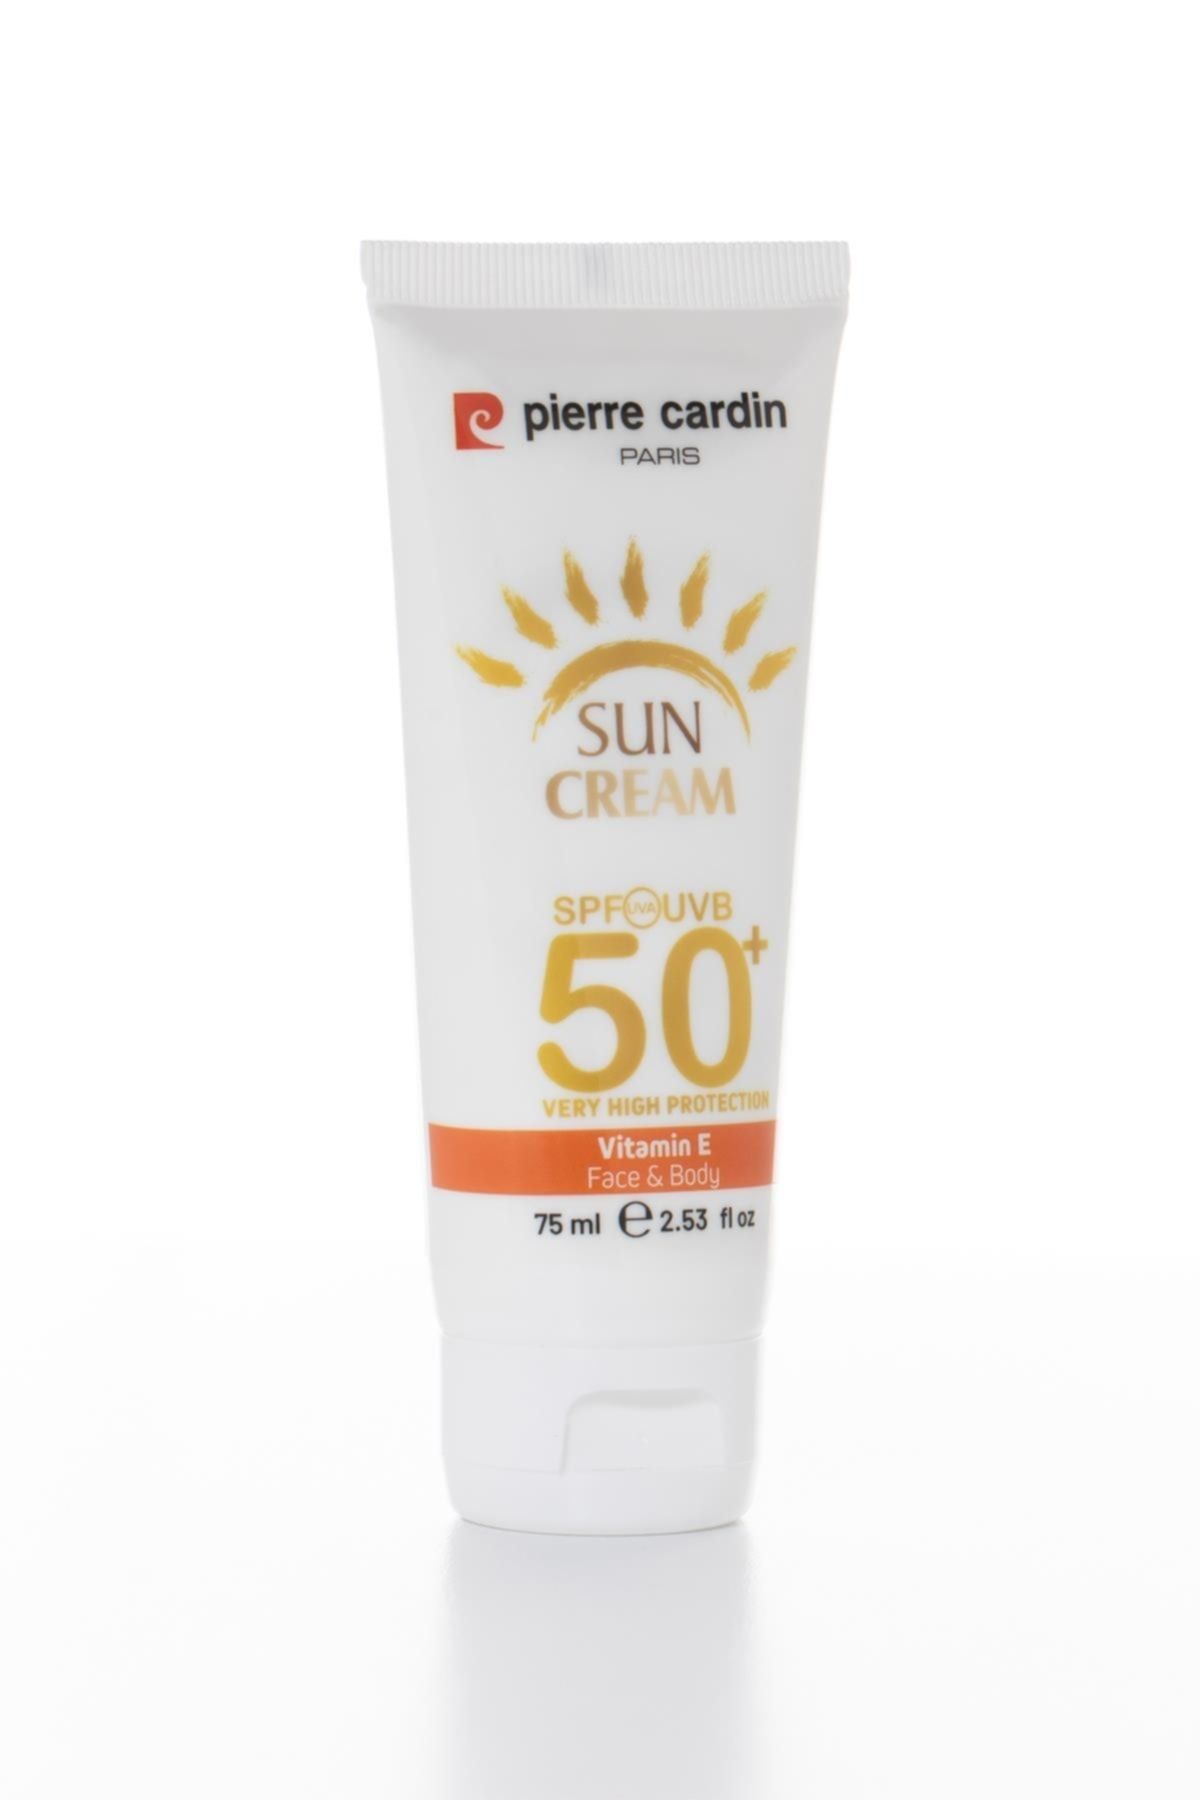 Pierre Cardin Koruyucu Güneş Kremi 50+ Spf Çok Yüksek Koruma - 75 Ml Vücut Güneş K